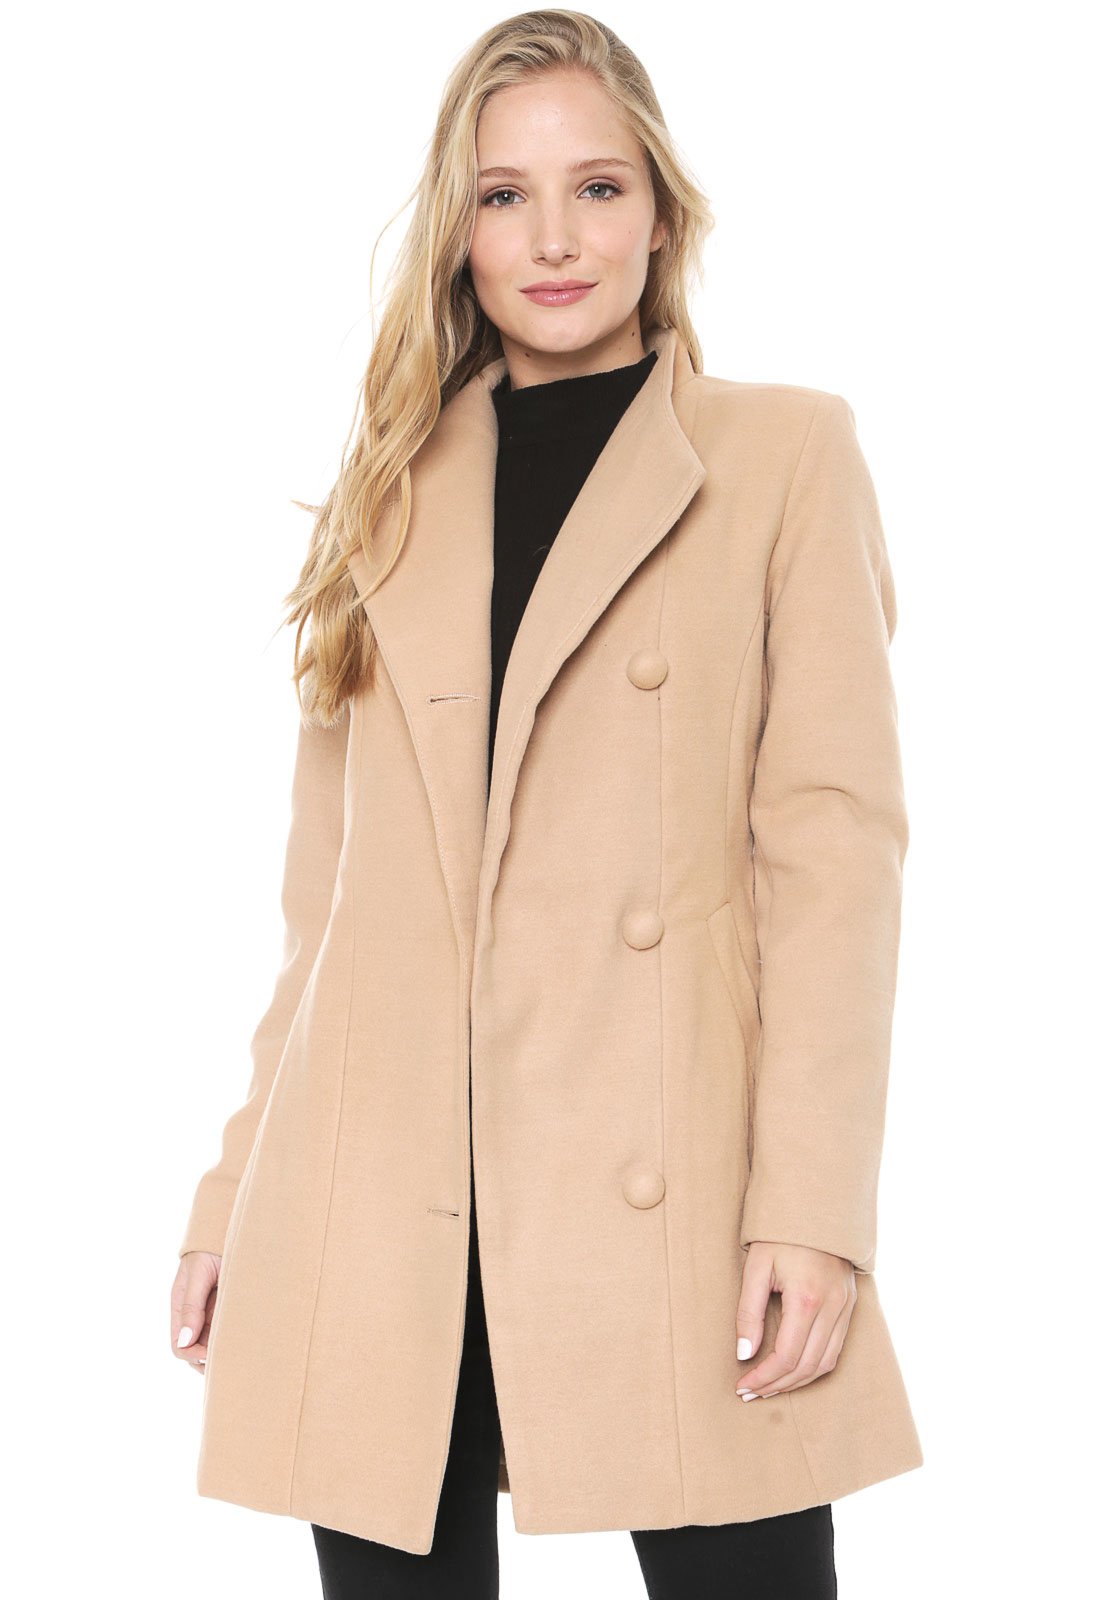 comprar casaco sobretudo feminino